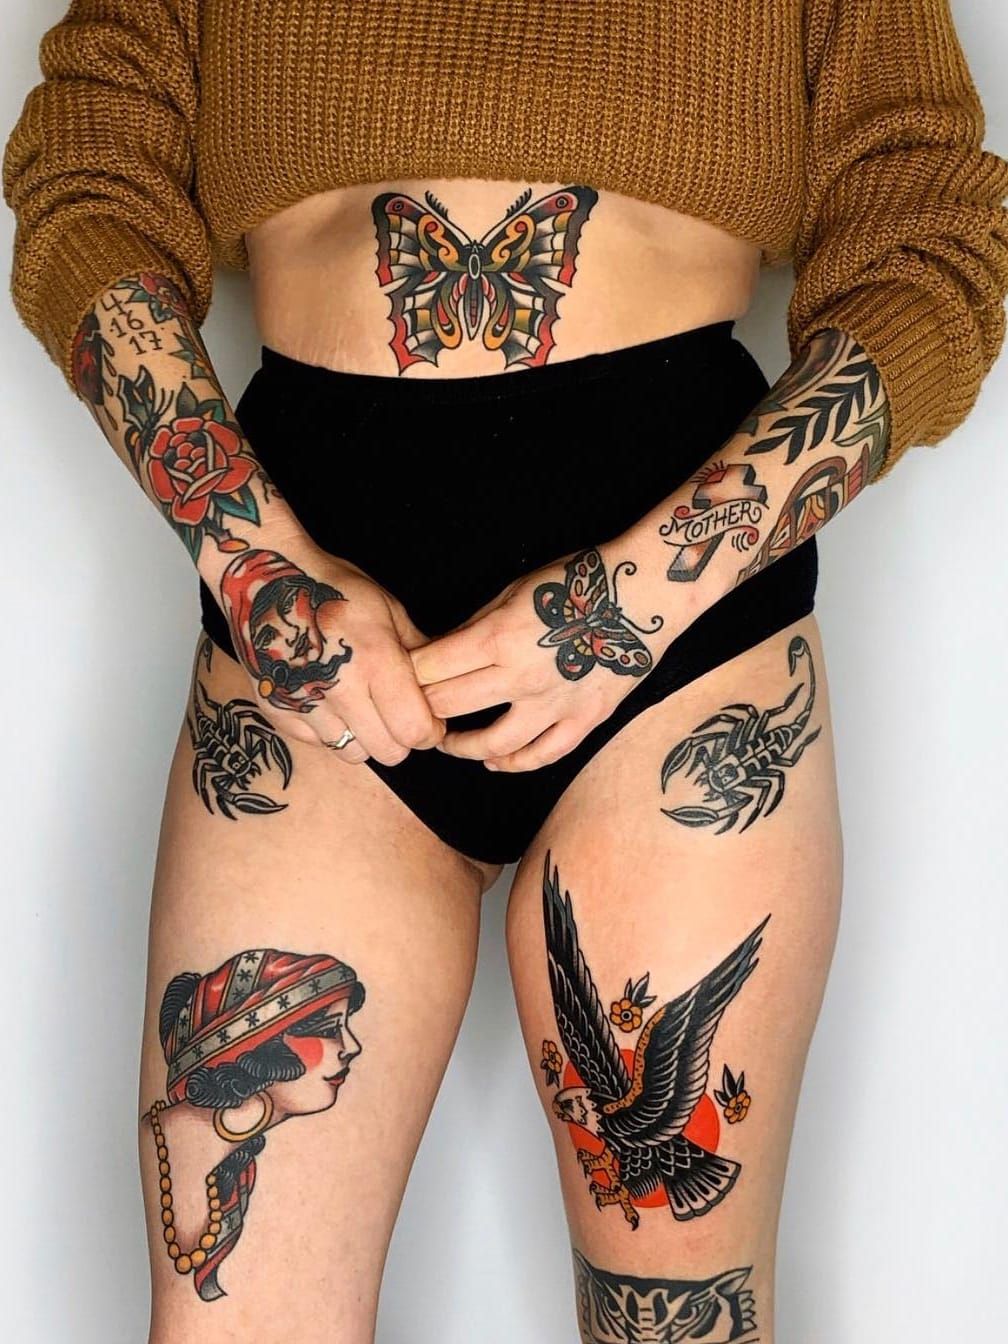 Scorpion tattoo on thigh